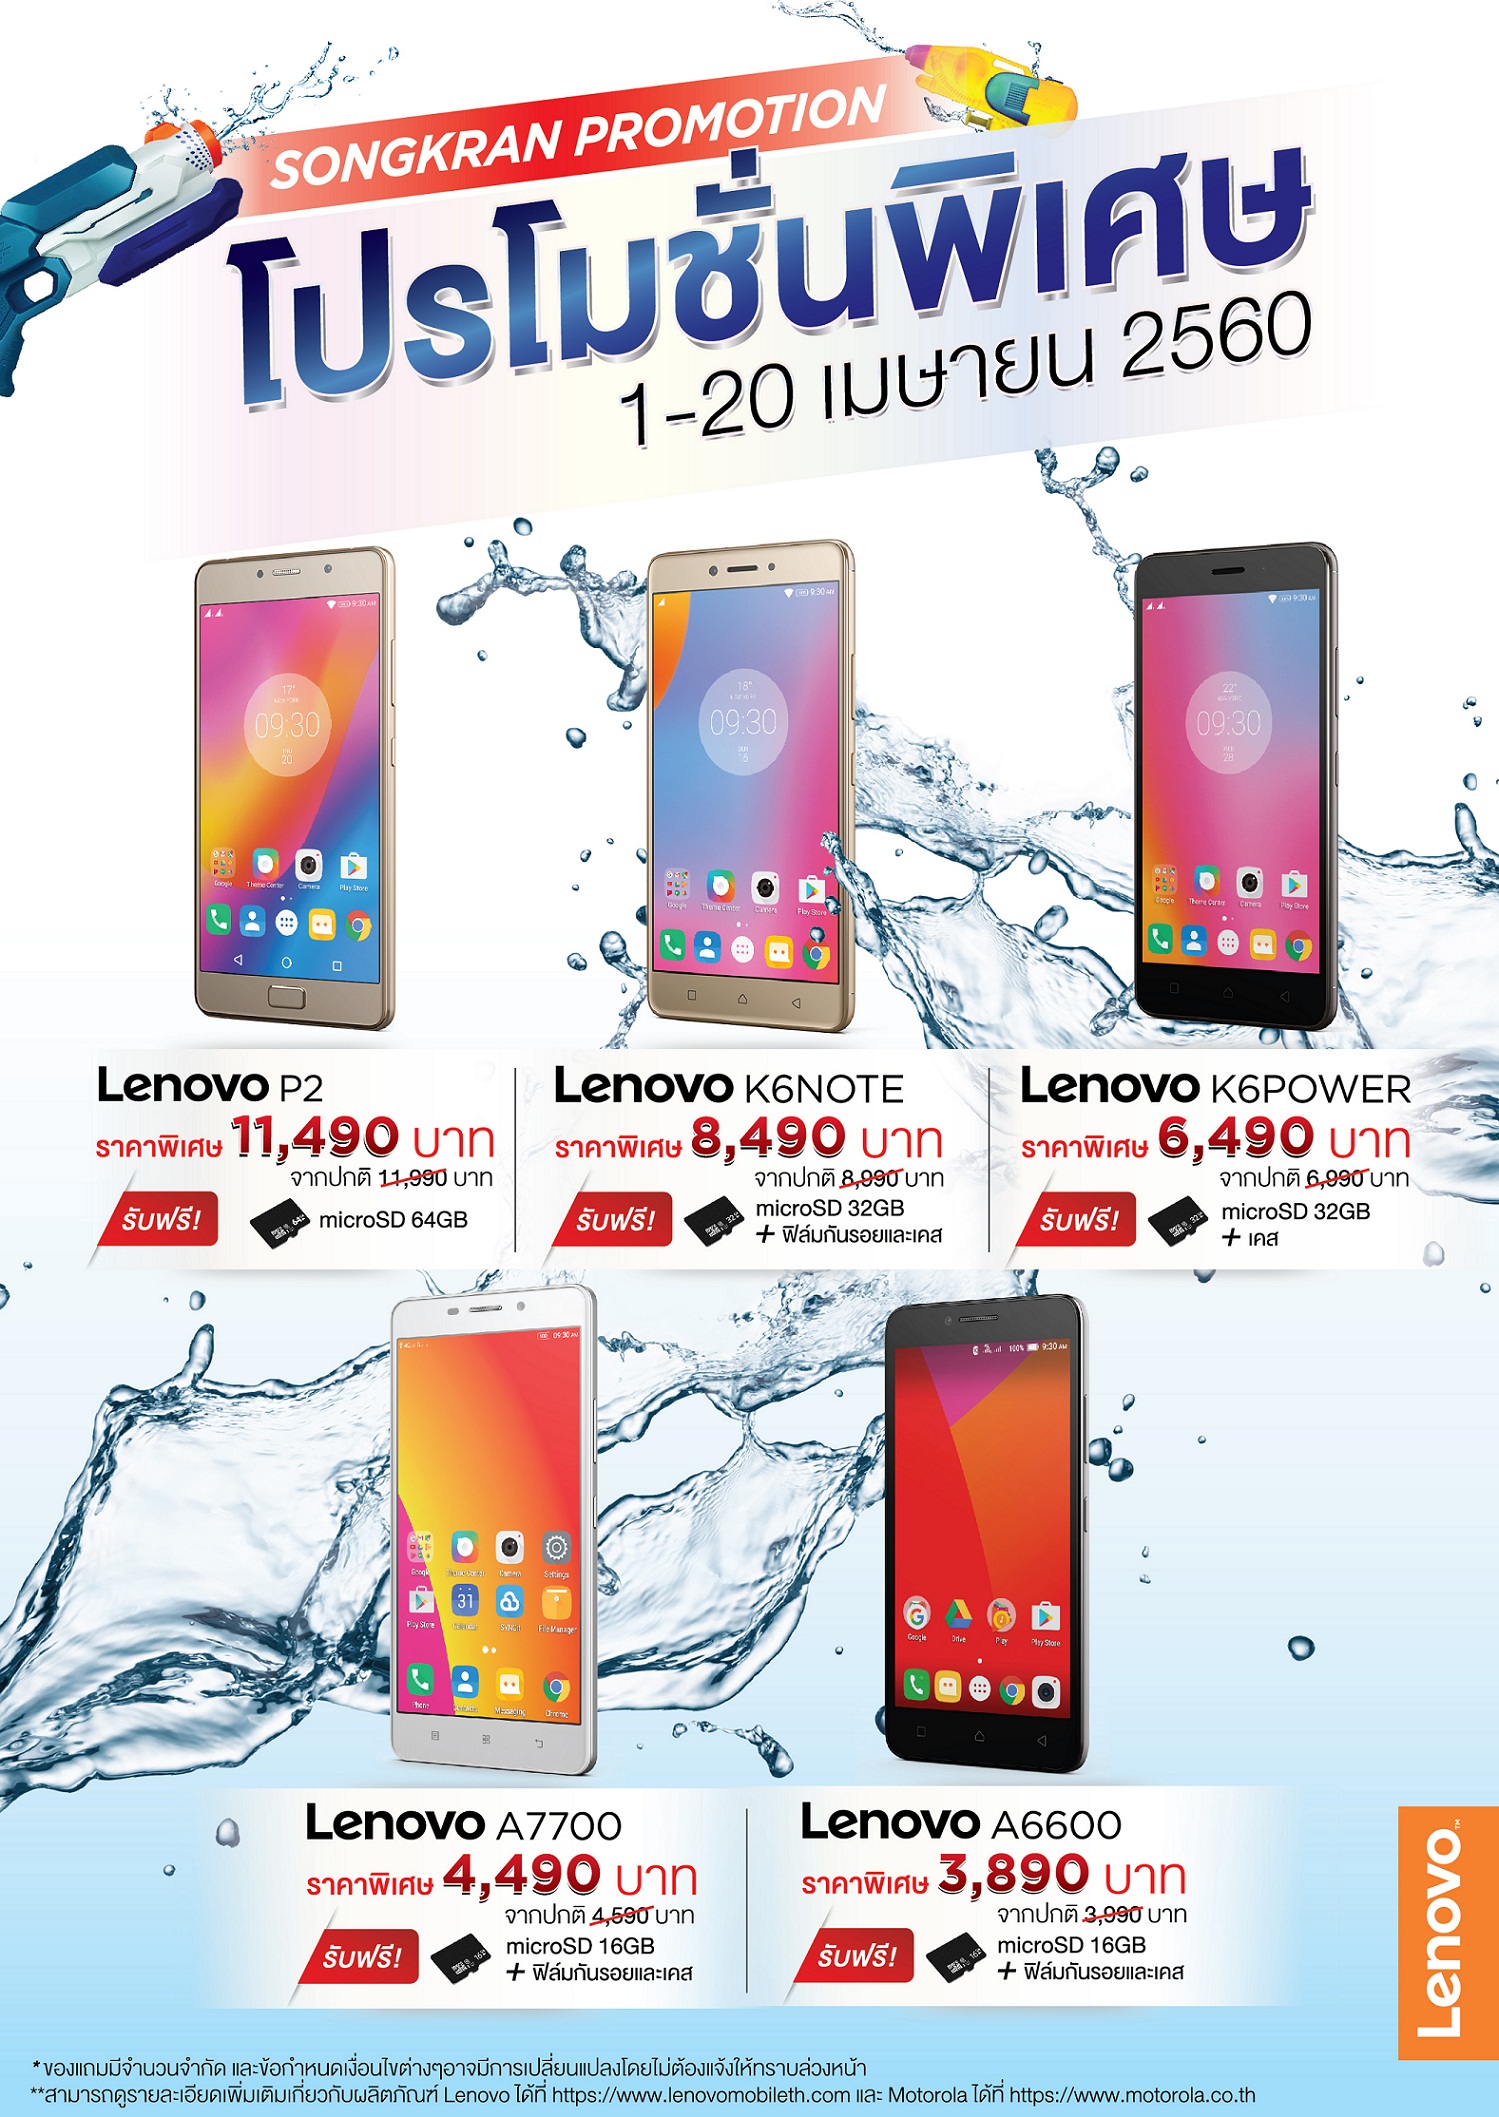 [PR] Lenovo กระหน่ำส่งโปรโมชั่นสมาร์ทโฟน ปะทะลมร้อน ต้อนรับเทศกาลสงกรานต์!!